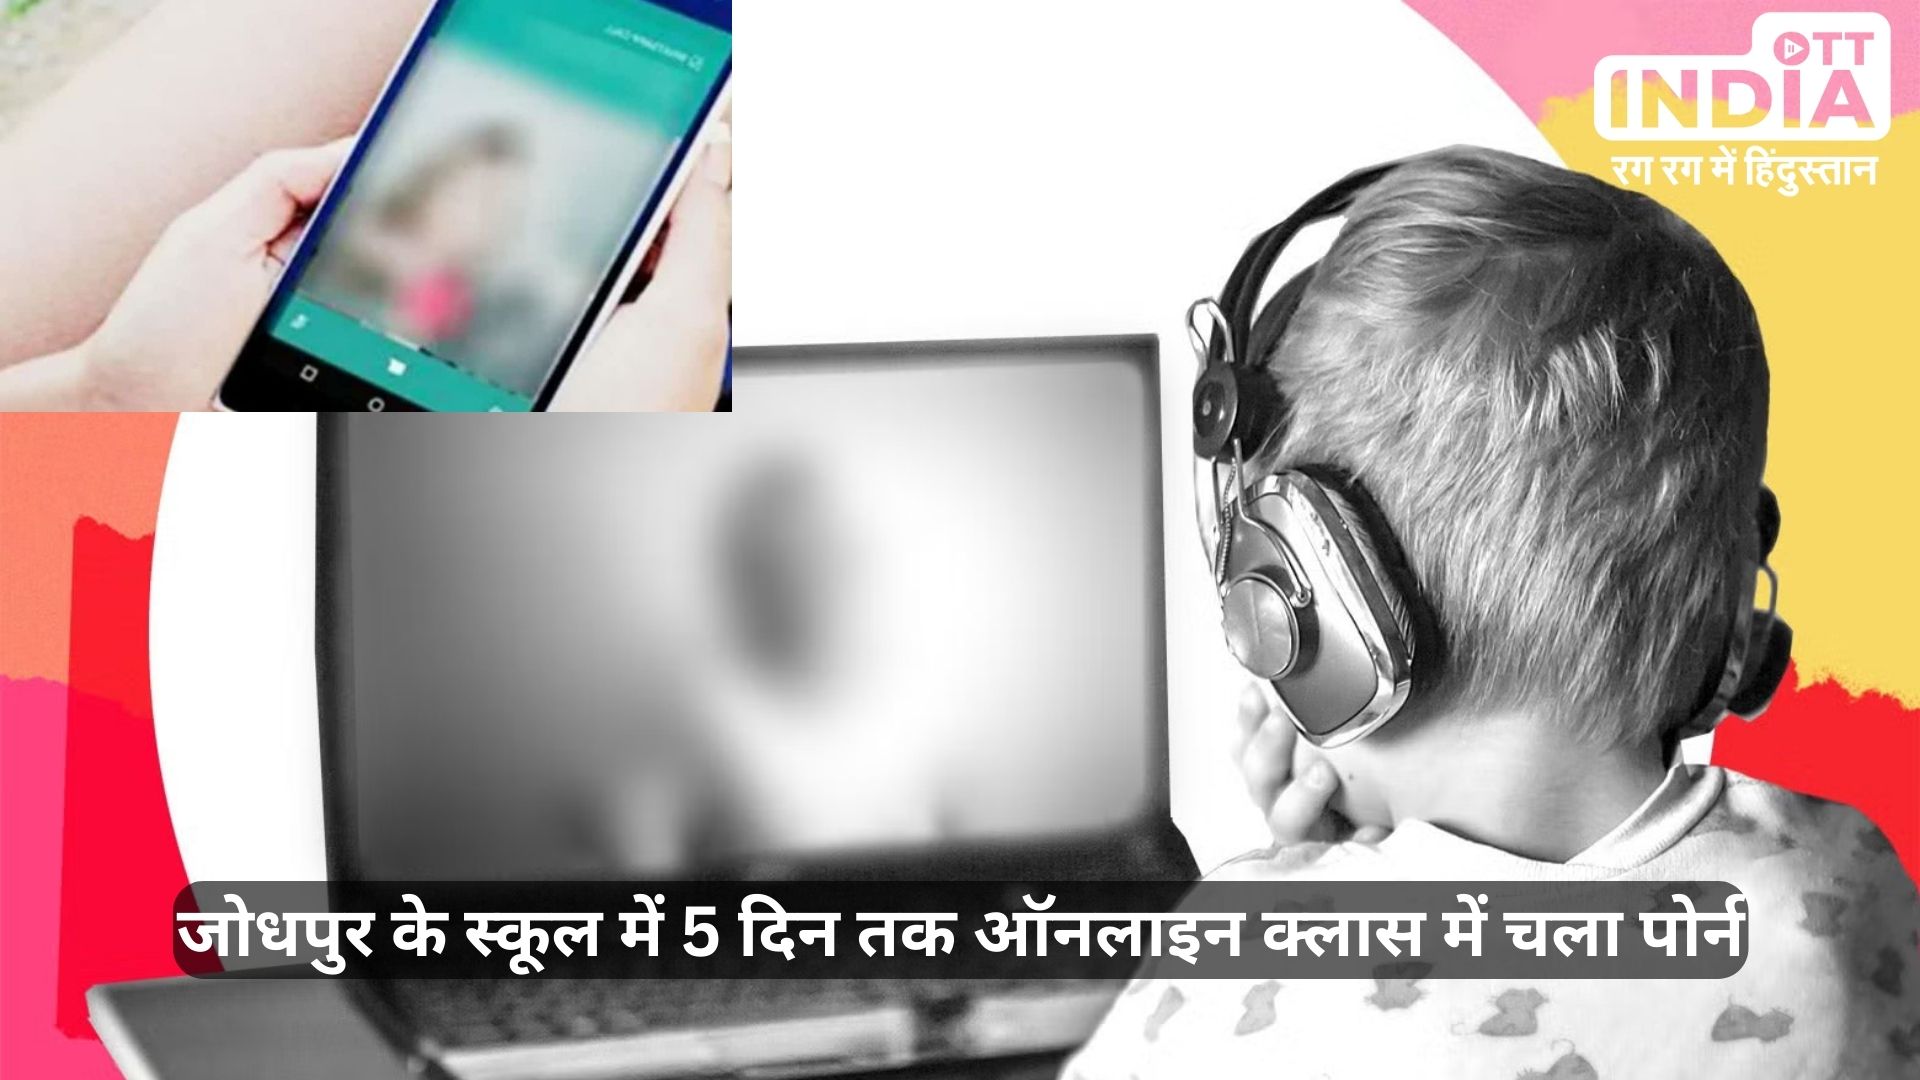 Porn in Online Class Jodhpur: एक बार फिर चली ऑनलाइन क्लास में पोर्न, 8वीं के 4 बच्चों ने जानबूझ कर किया